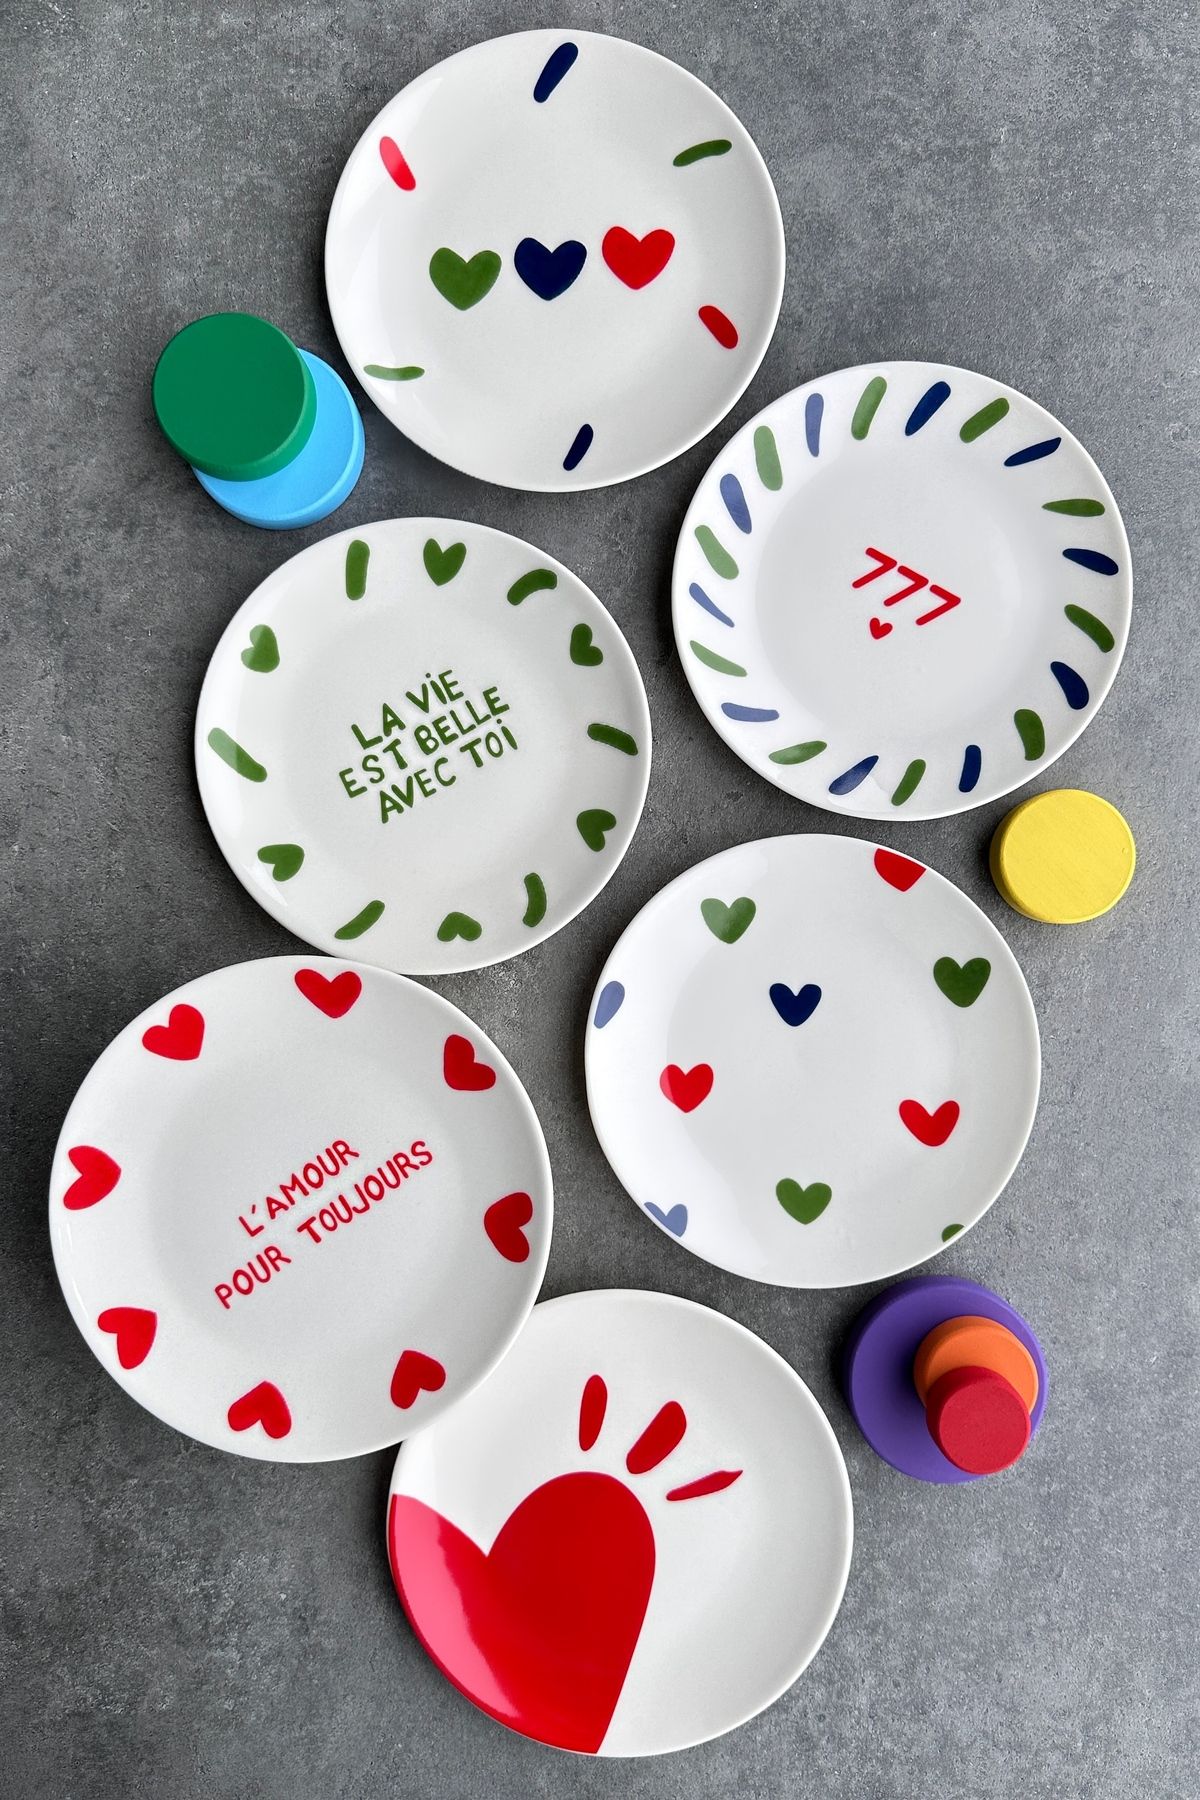 porselenden Lucky 777 6 kişilik 19 cm Özel Tasarım Premium Porselen Pasta Tabağı Takımı Manifest